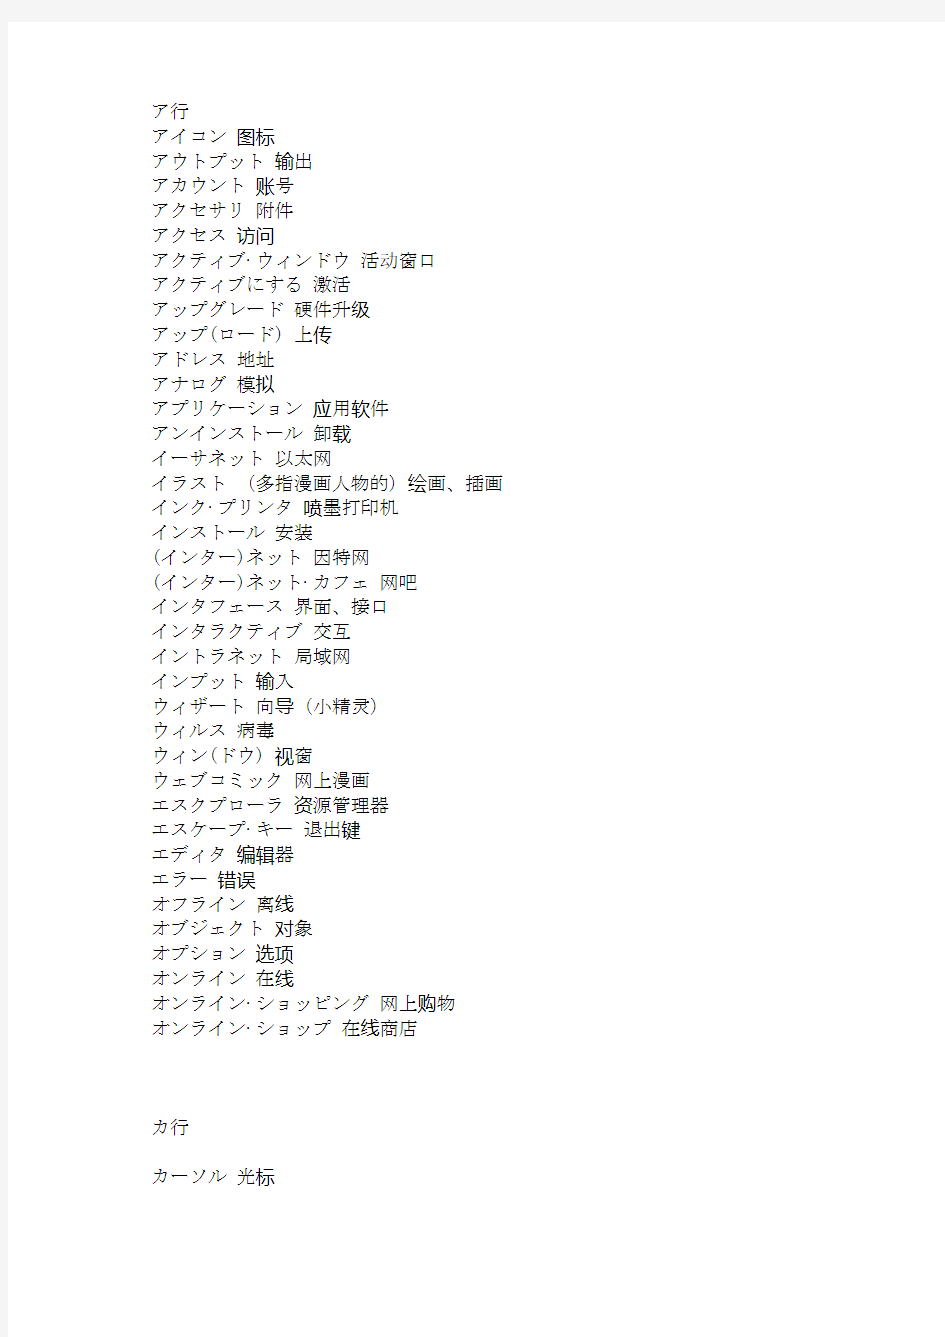 计算机专业日语词汇